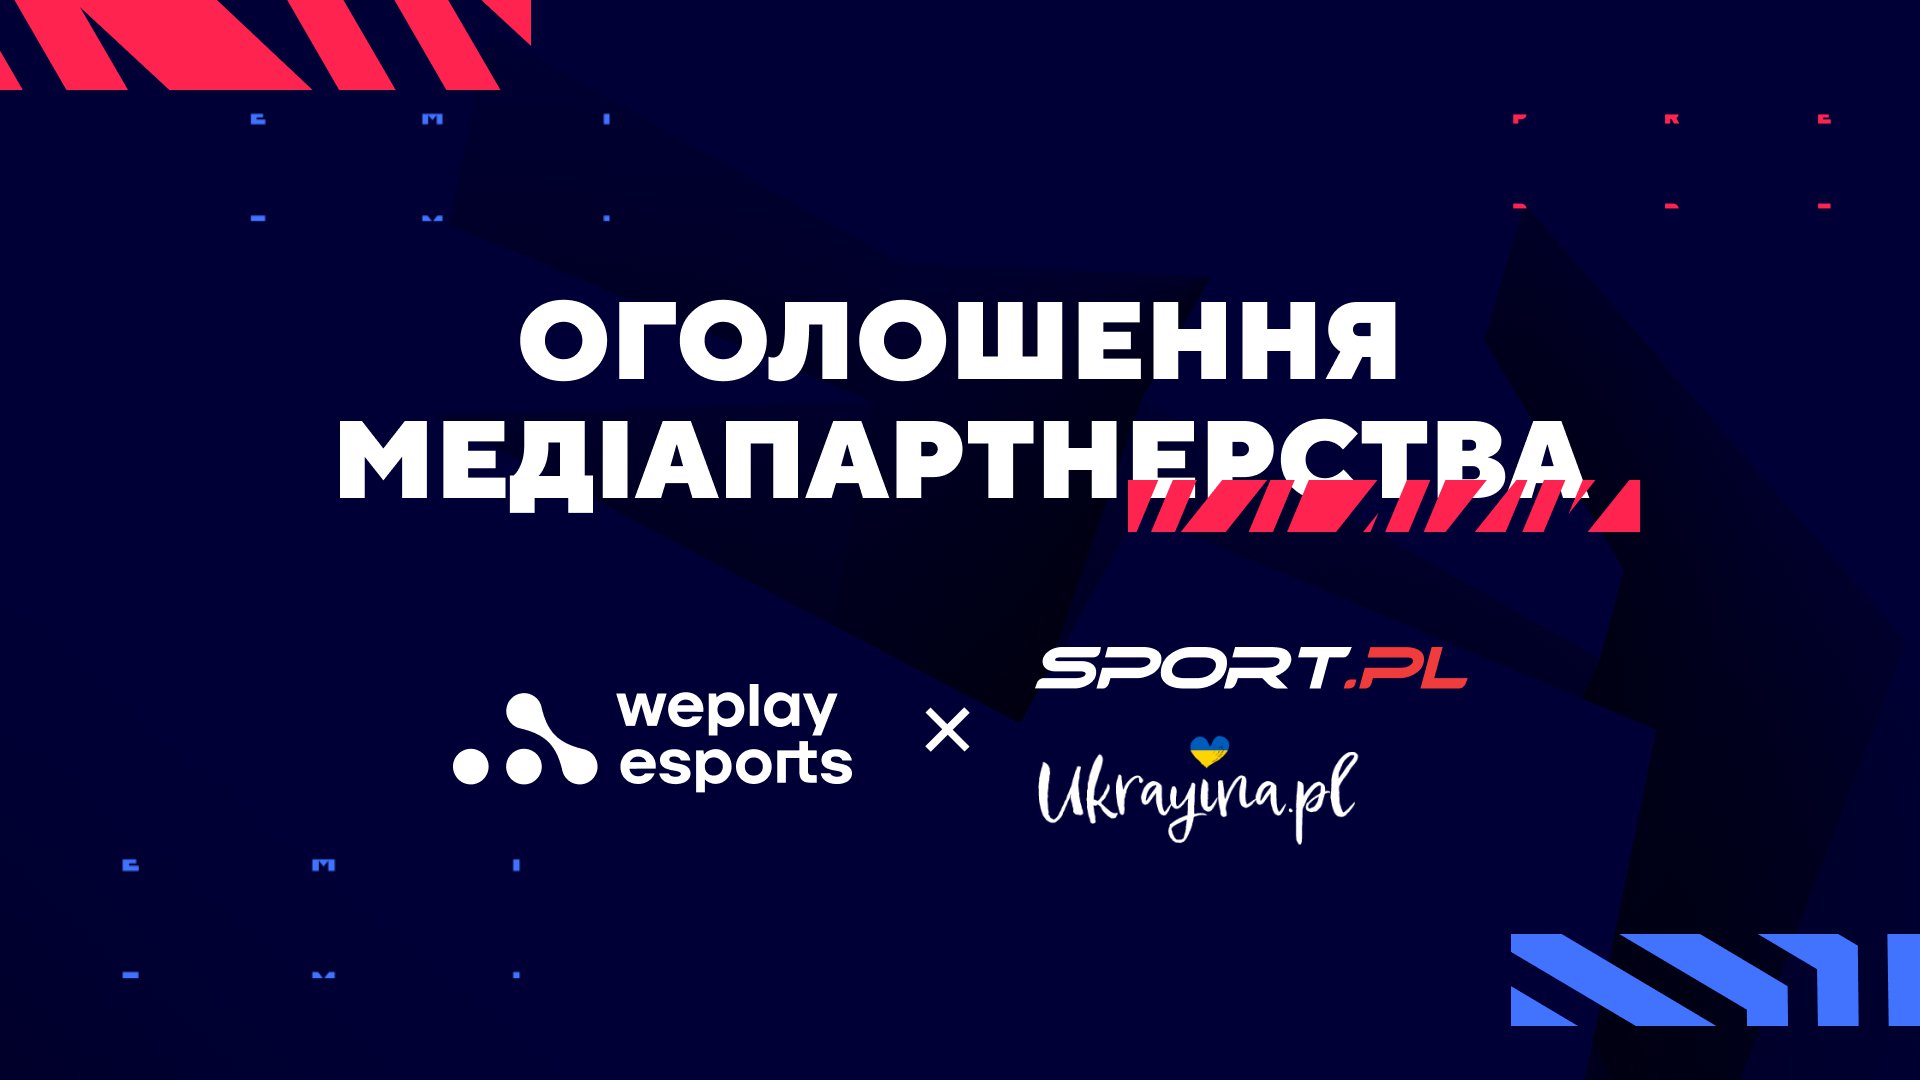 Sport.pl та Ukrayina.pl стали медіапартнерами українськомовної трансляції WePlay Esports. Зображення: WePlay Holding